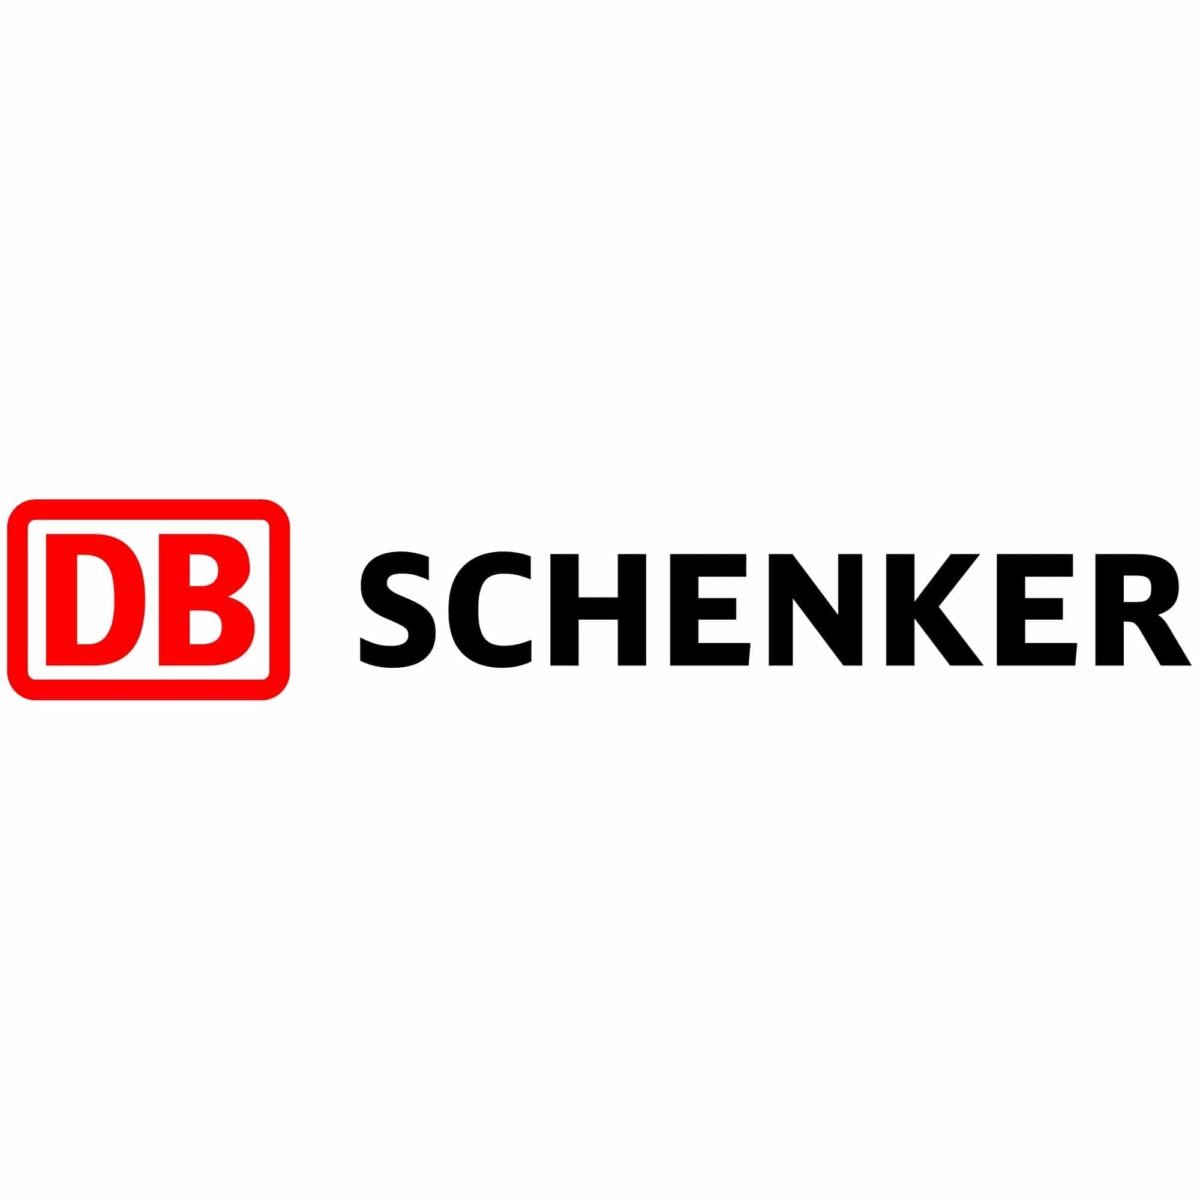 DB_Schenker